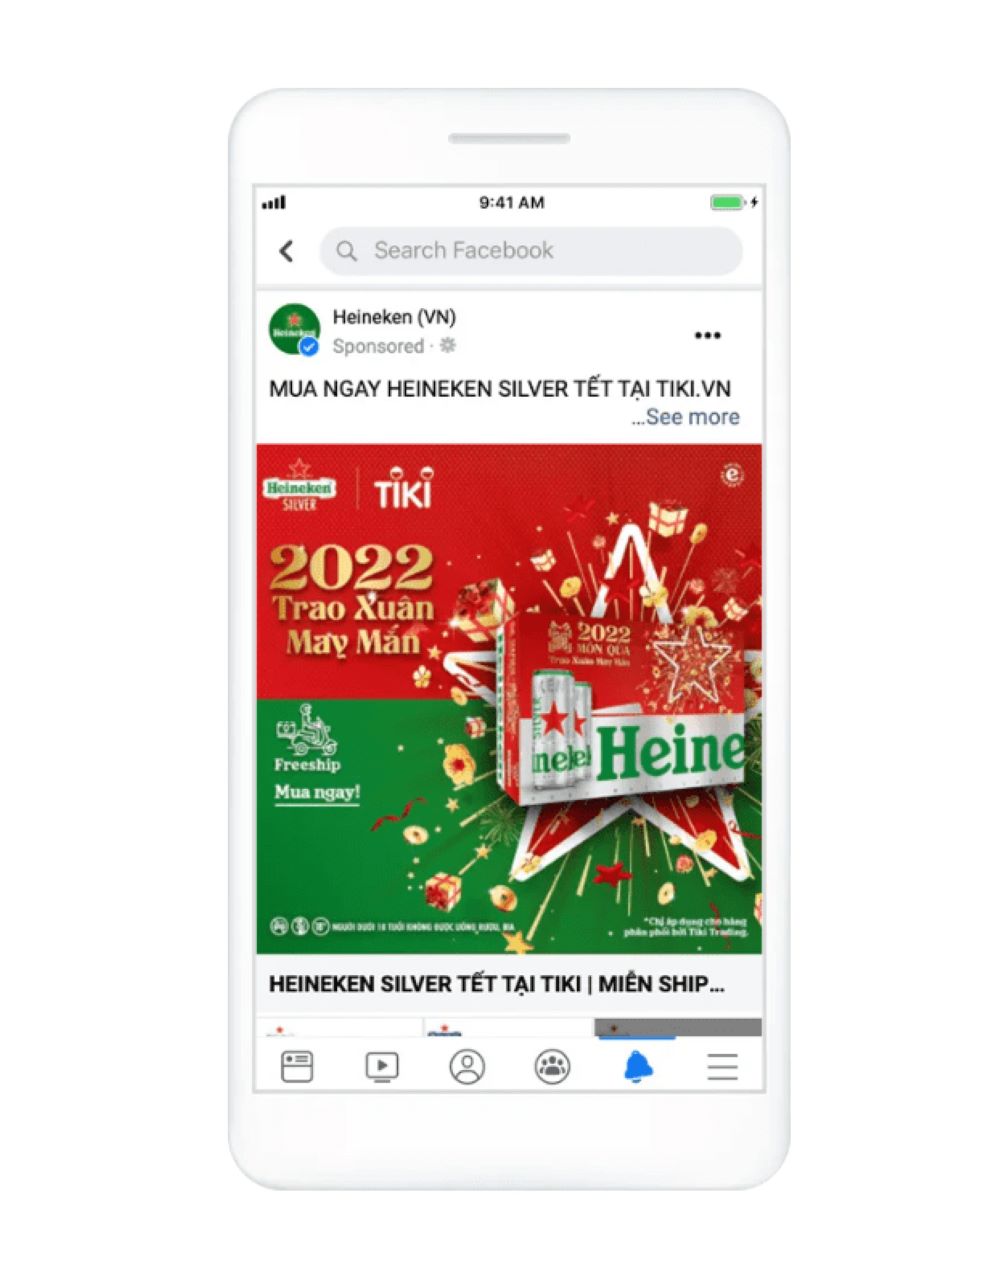 Cách Heineken Việt Nam triển khai chiến dịch